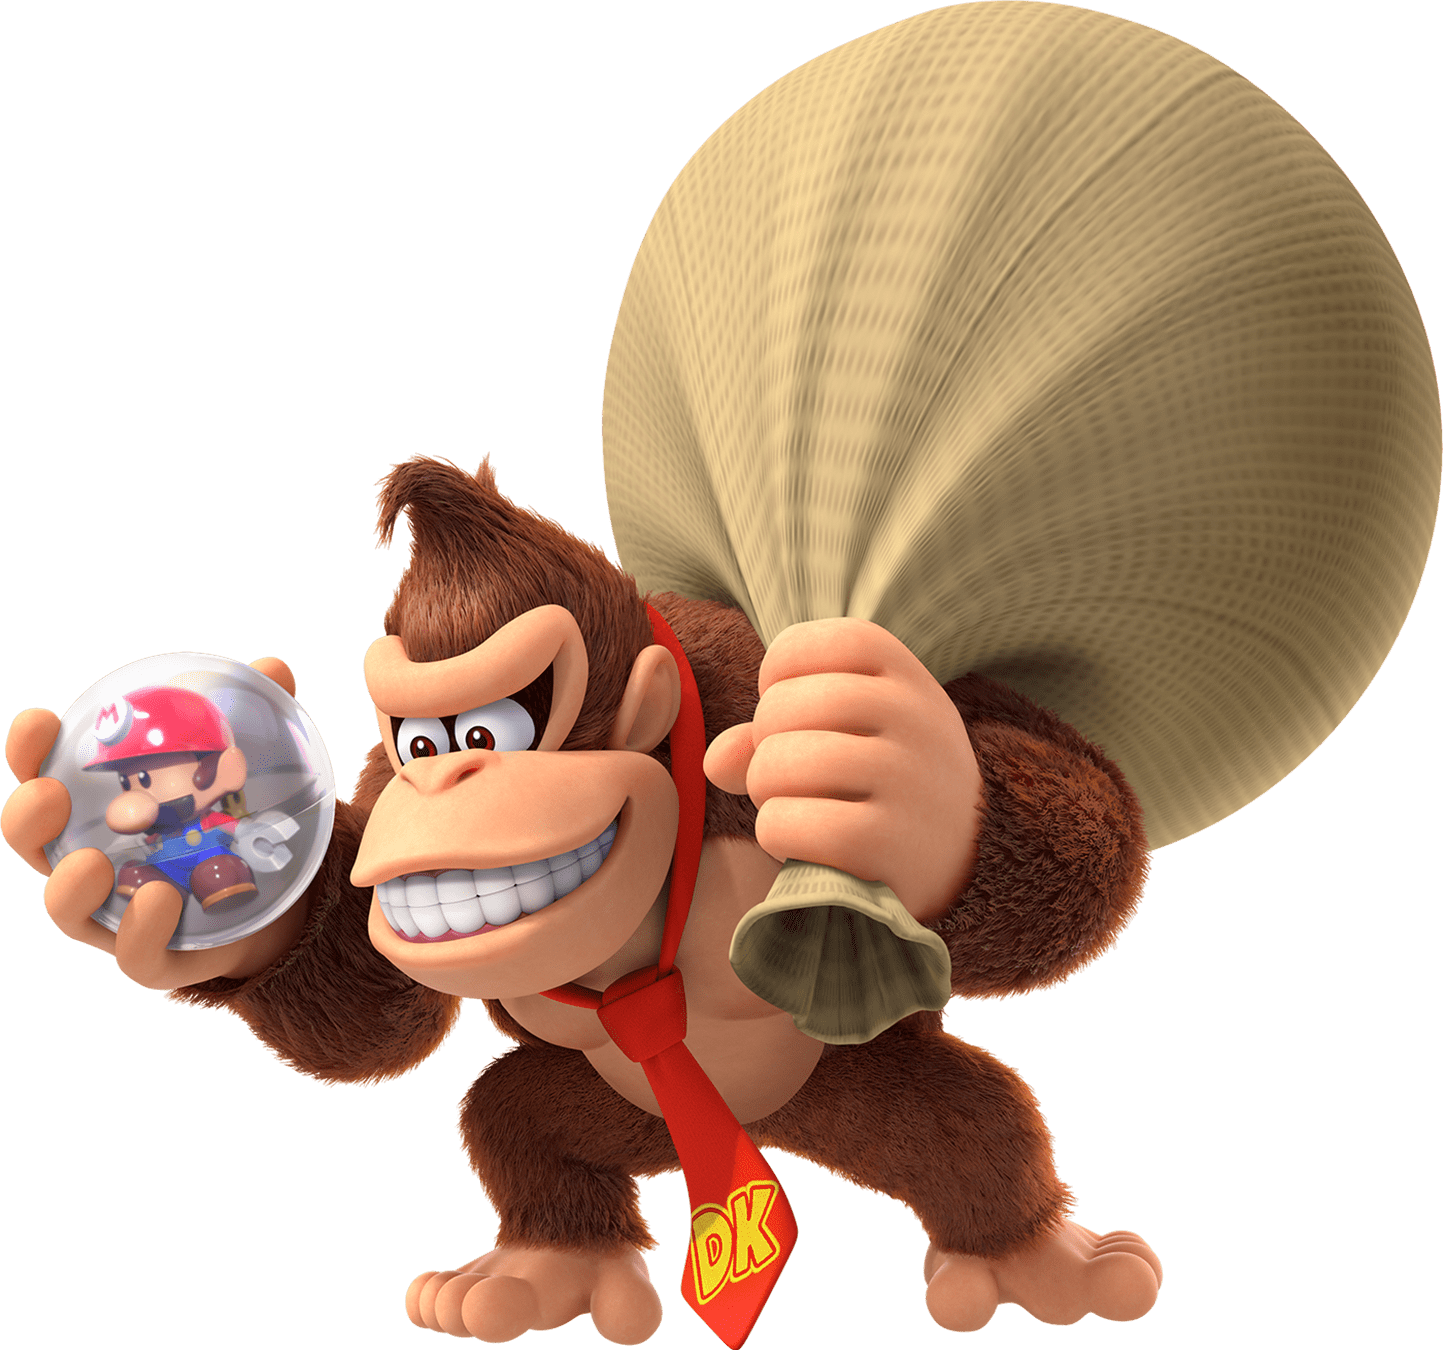 Donkey Kong (character), MarioWiki